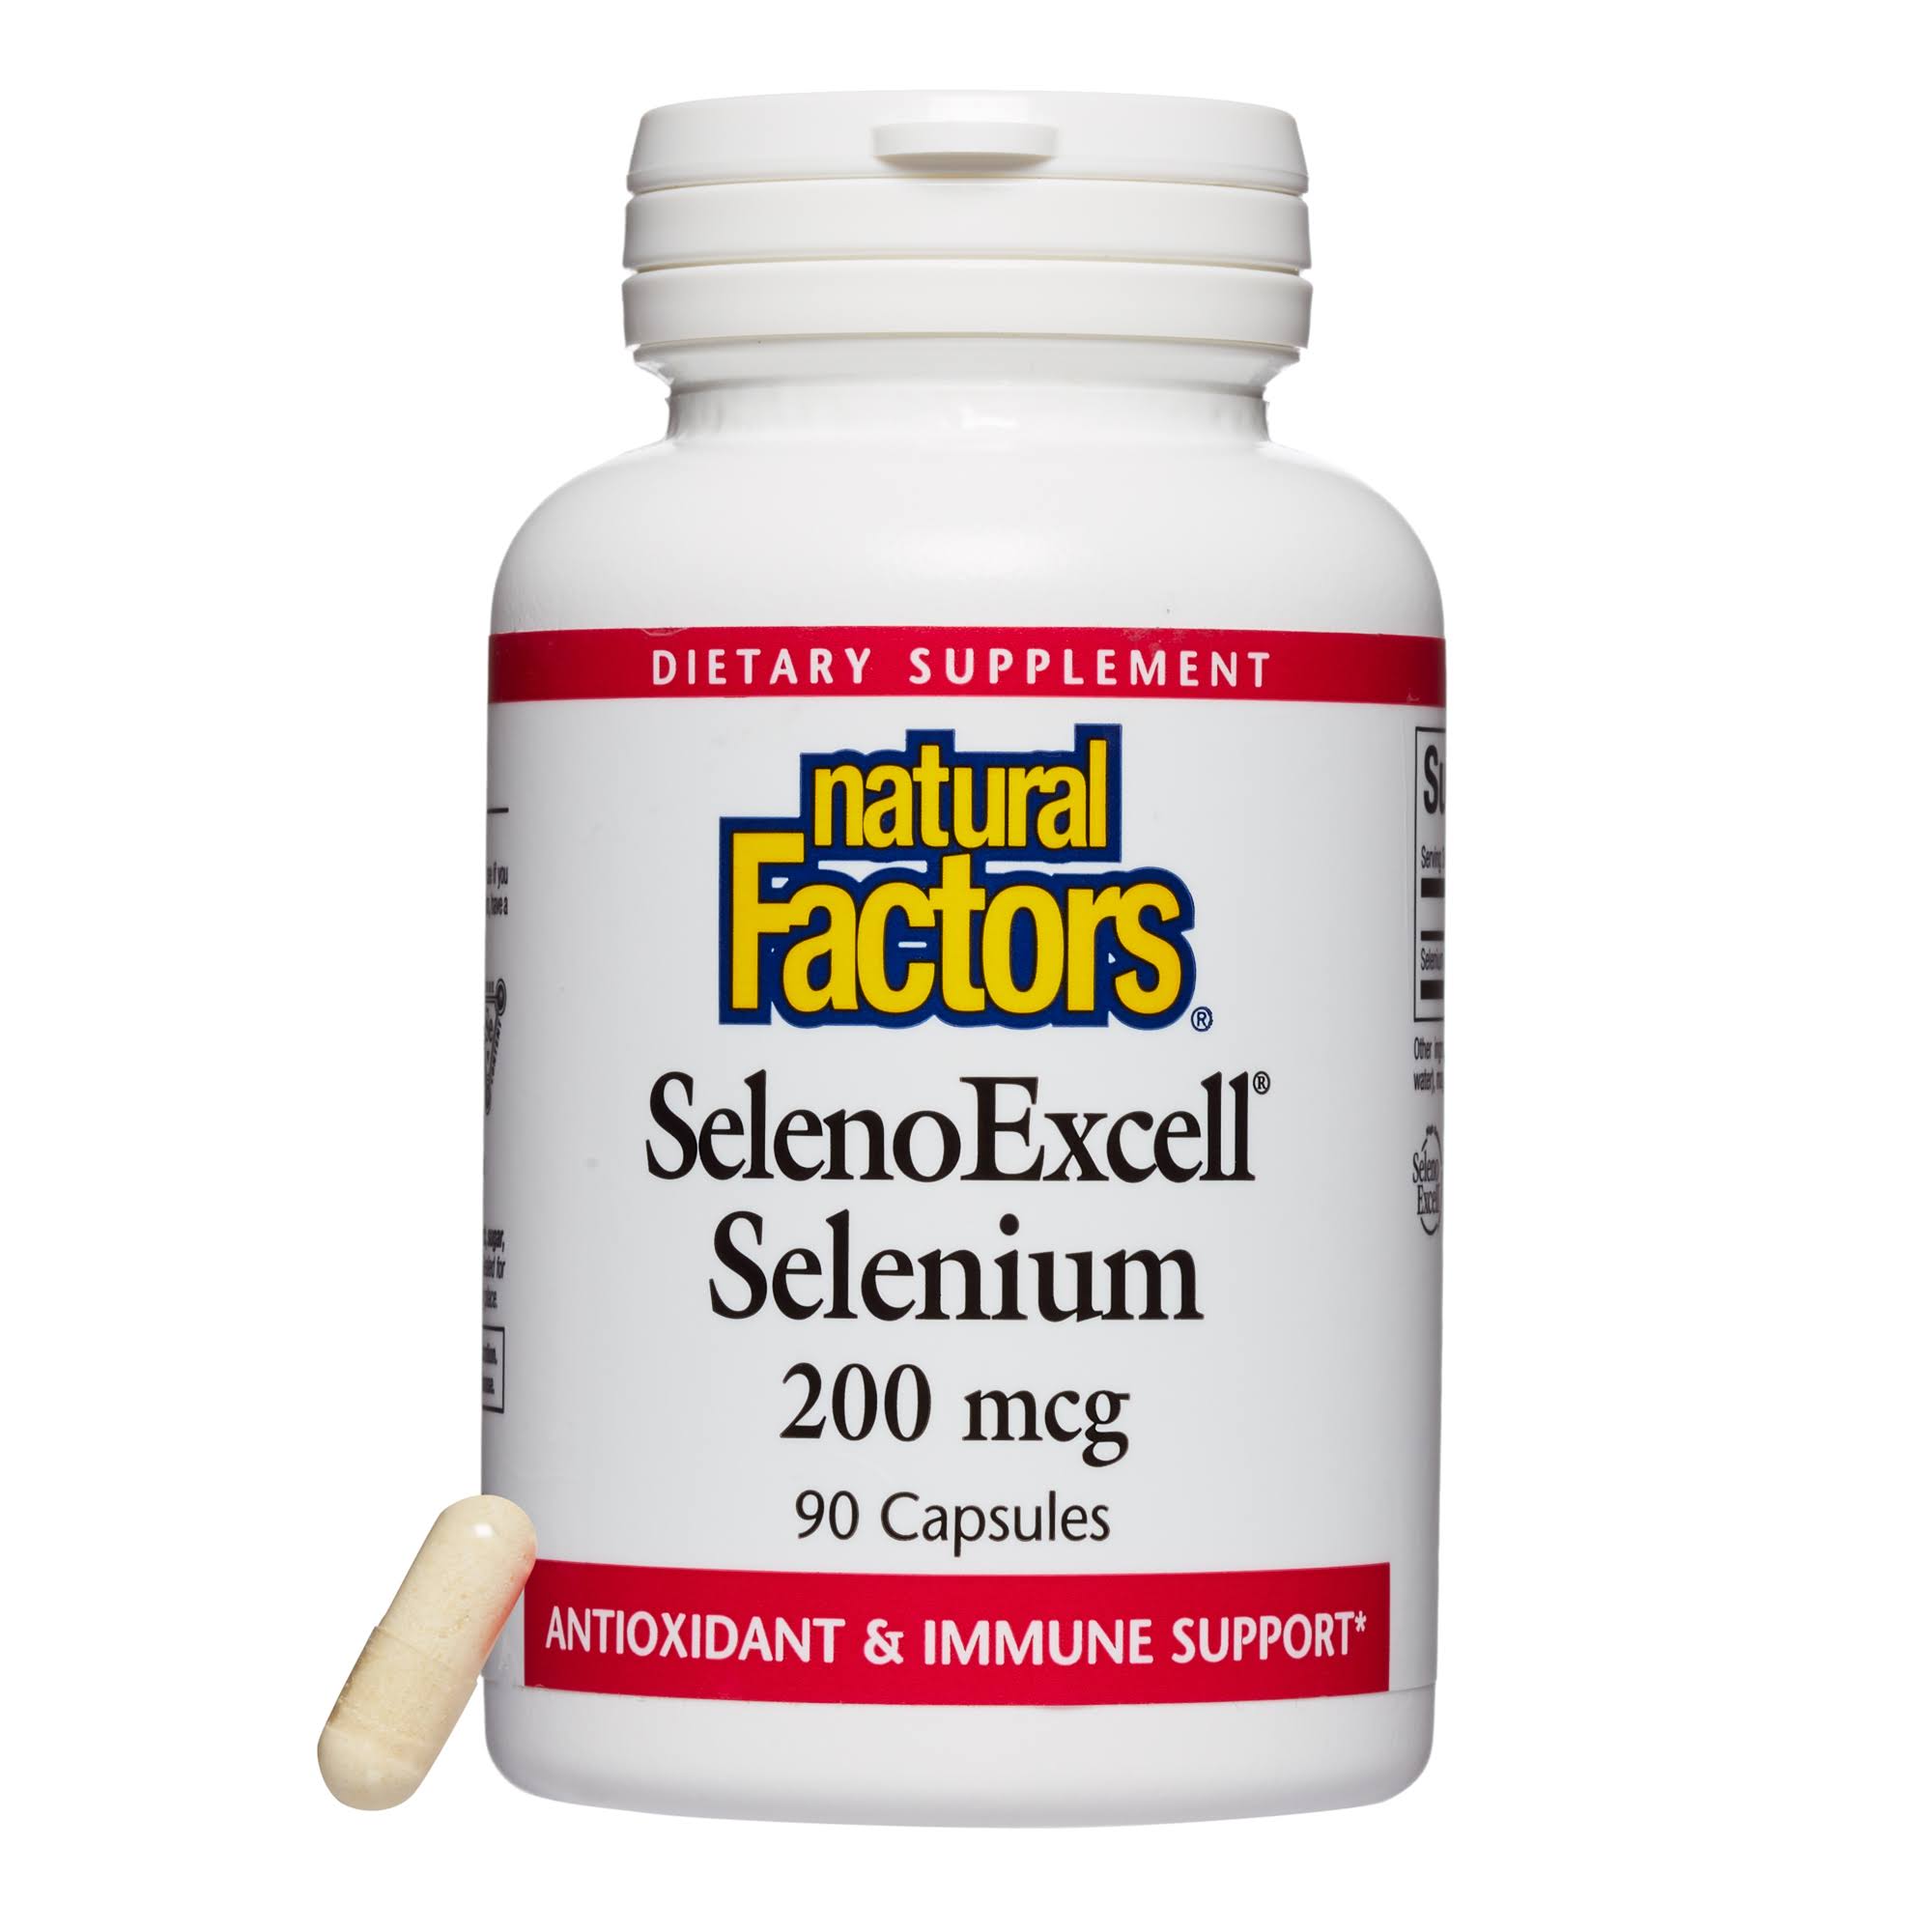 Natural Factors SelenoExcell Selenium Yeast - 200mcg, 90 Capsules